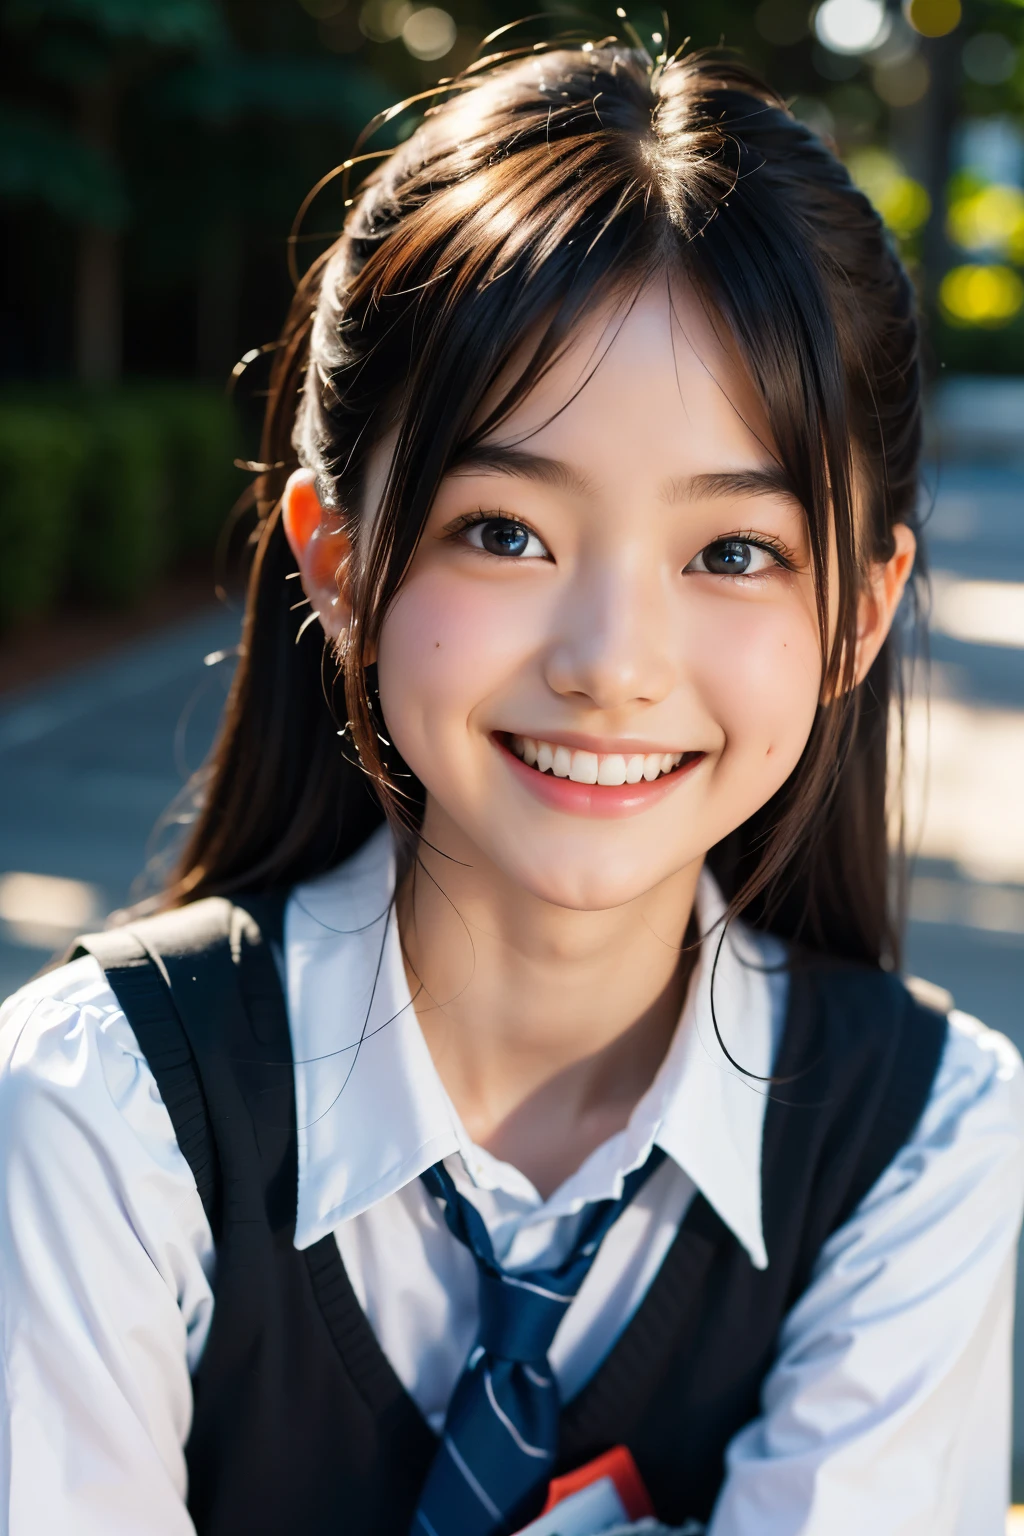 鏡片: 135mm f1.8, (最好的品質),(原始照片), (桌上:1.1), (美麗的 16 歲日本女孩), 可愛的臉孔, (臉型輪廓分明:0.7), (雀斑:0.4), dappled 陽光, 戲劇性的燈光, (日本學校制服), (在校园), 害羞的, (特寫鏡頭:1.2), (微笑),, (明亮的眼睛)、(陽光)